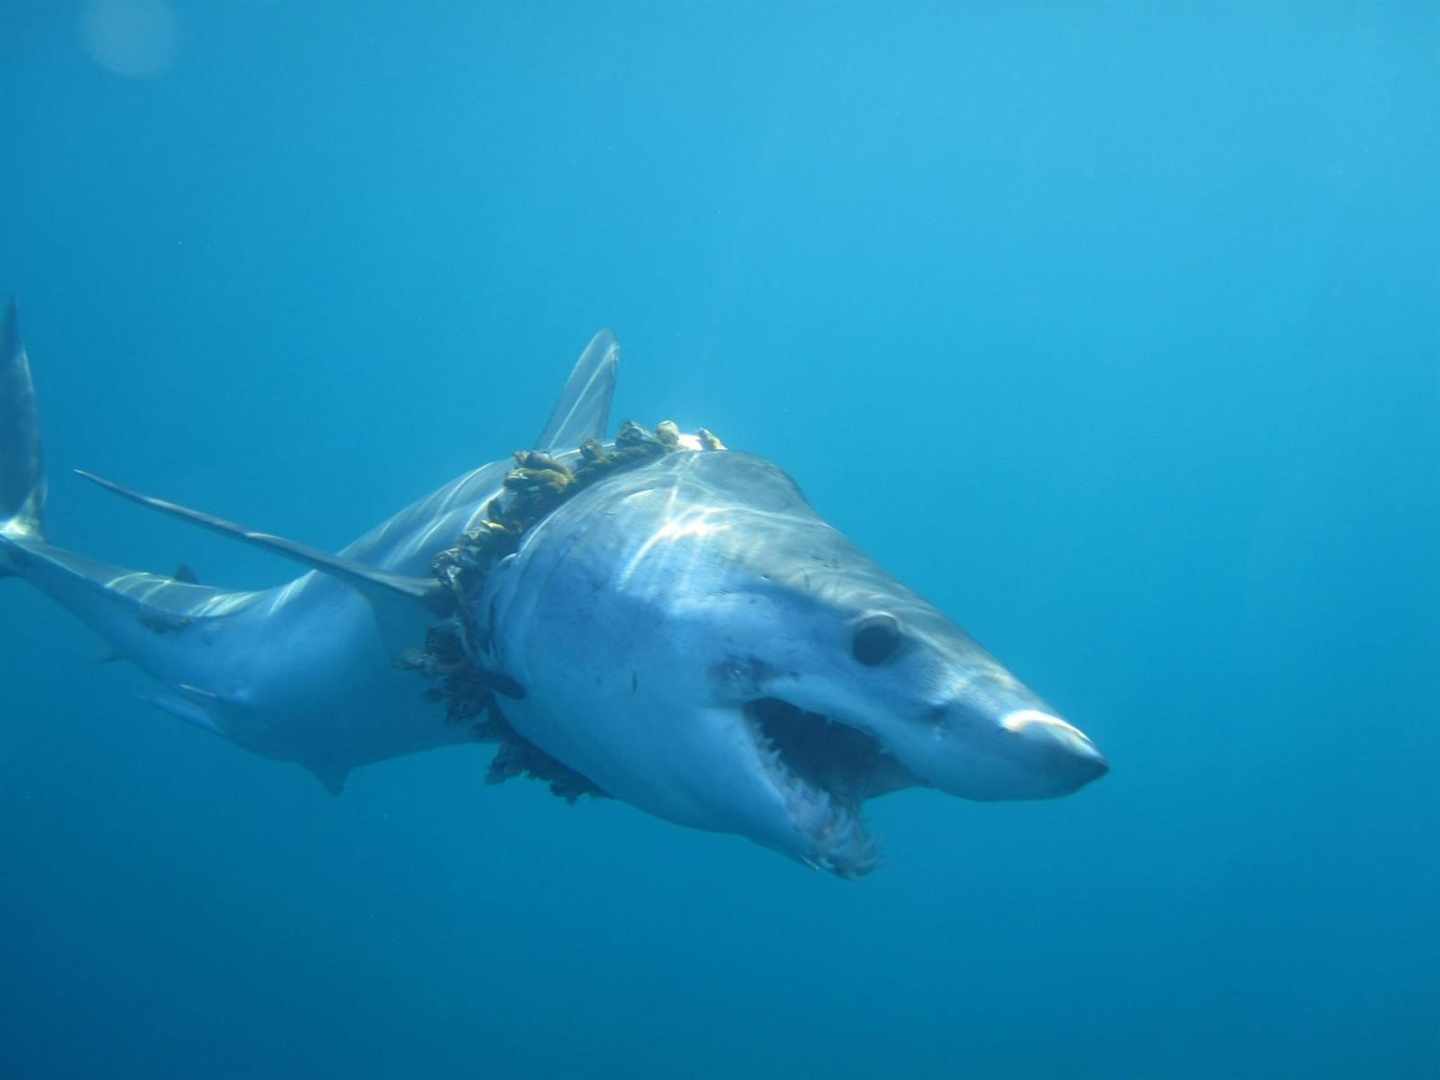 Artilugios de pesca, embalajes y neumáticos atrapan a tiburones y rayas en el océano